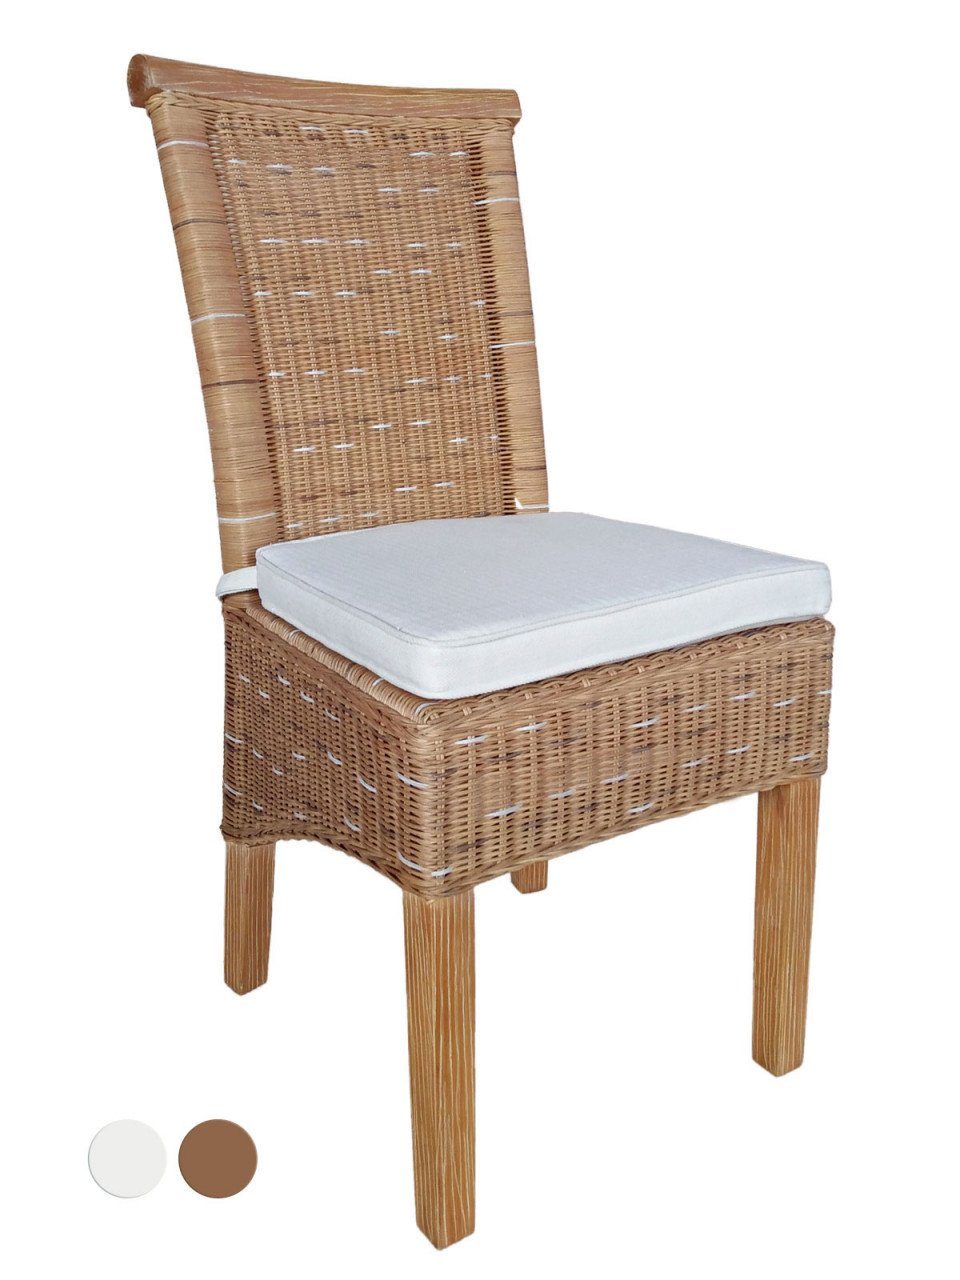 soma Sessel Soma Esszimmer-Stühle Set Rattanstühle Perth 6 Stück weiß oder braun S, Stuhl Sessel Sitzplatz Sitzmöbel